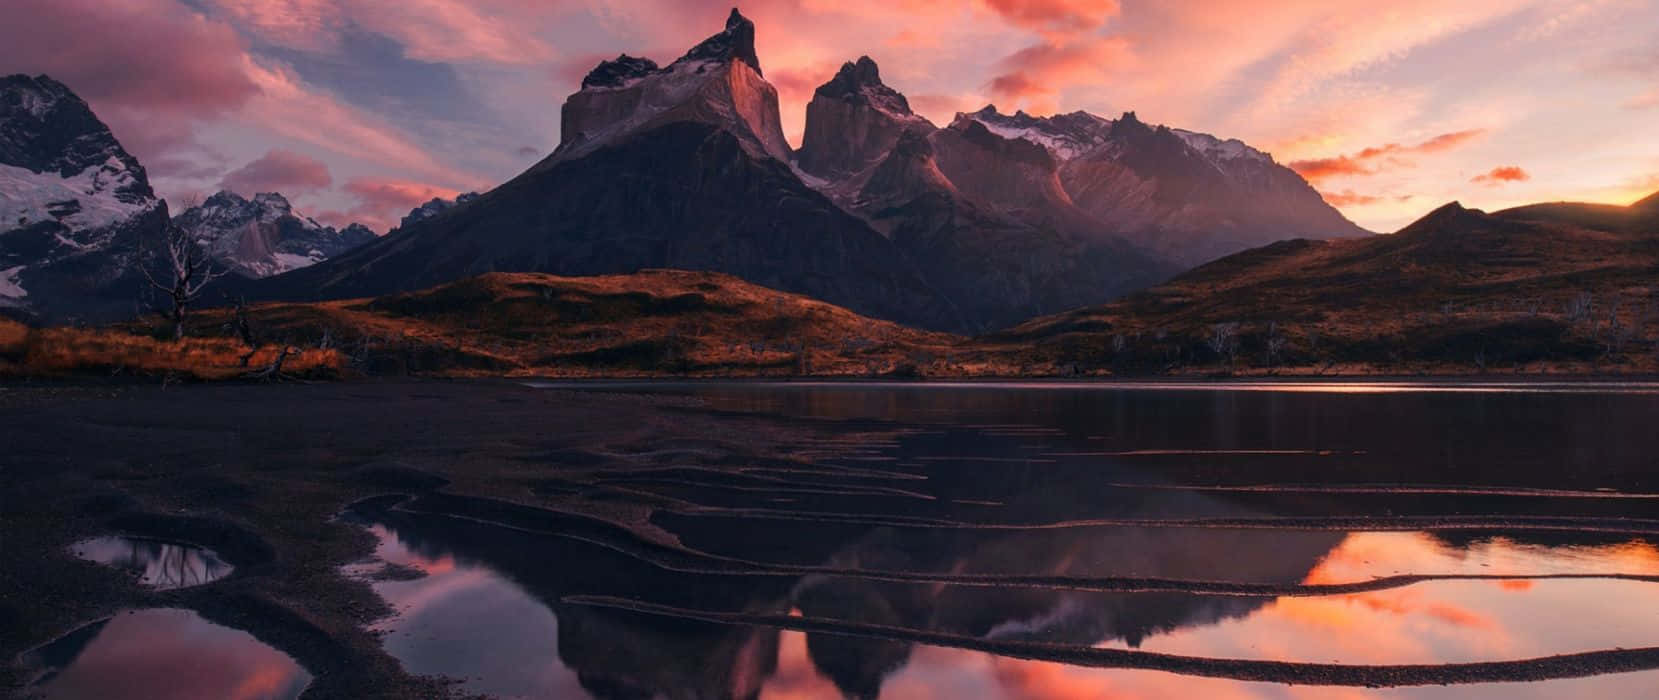 Unacadena Montañosa Se Refleja En Un Lago Al Atardecer. Fondo de pantalla